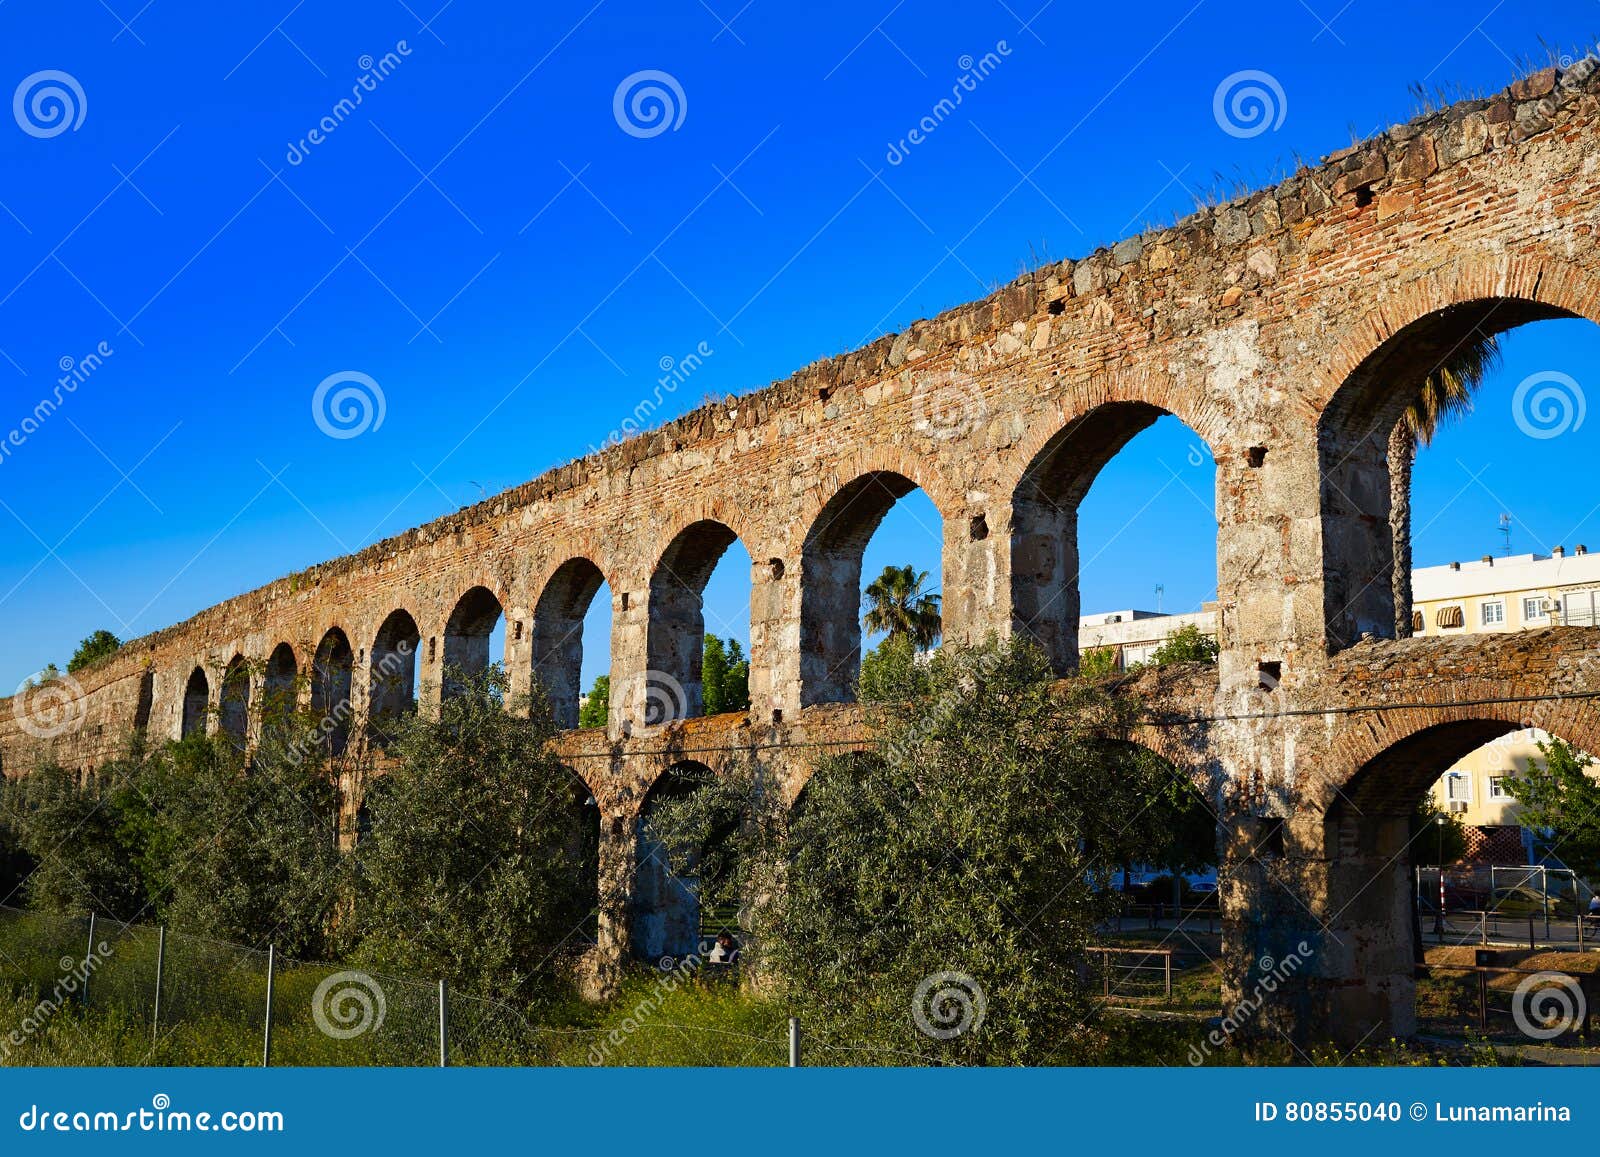 acueducto san lazaro in merida badajoz aqueduct